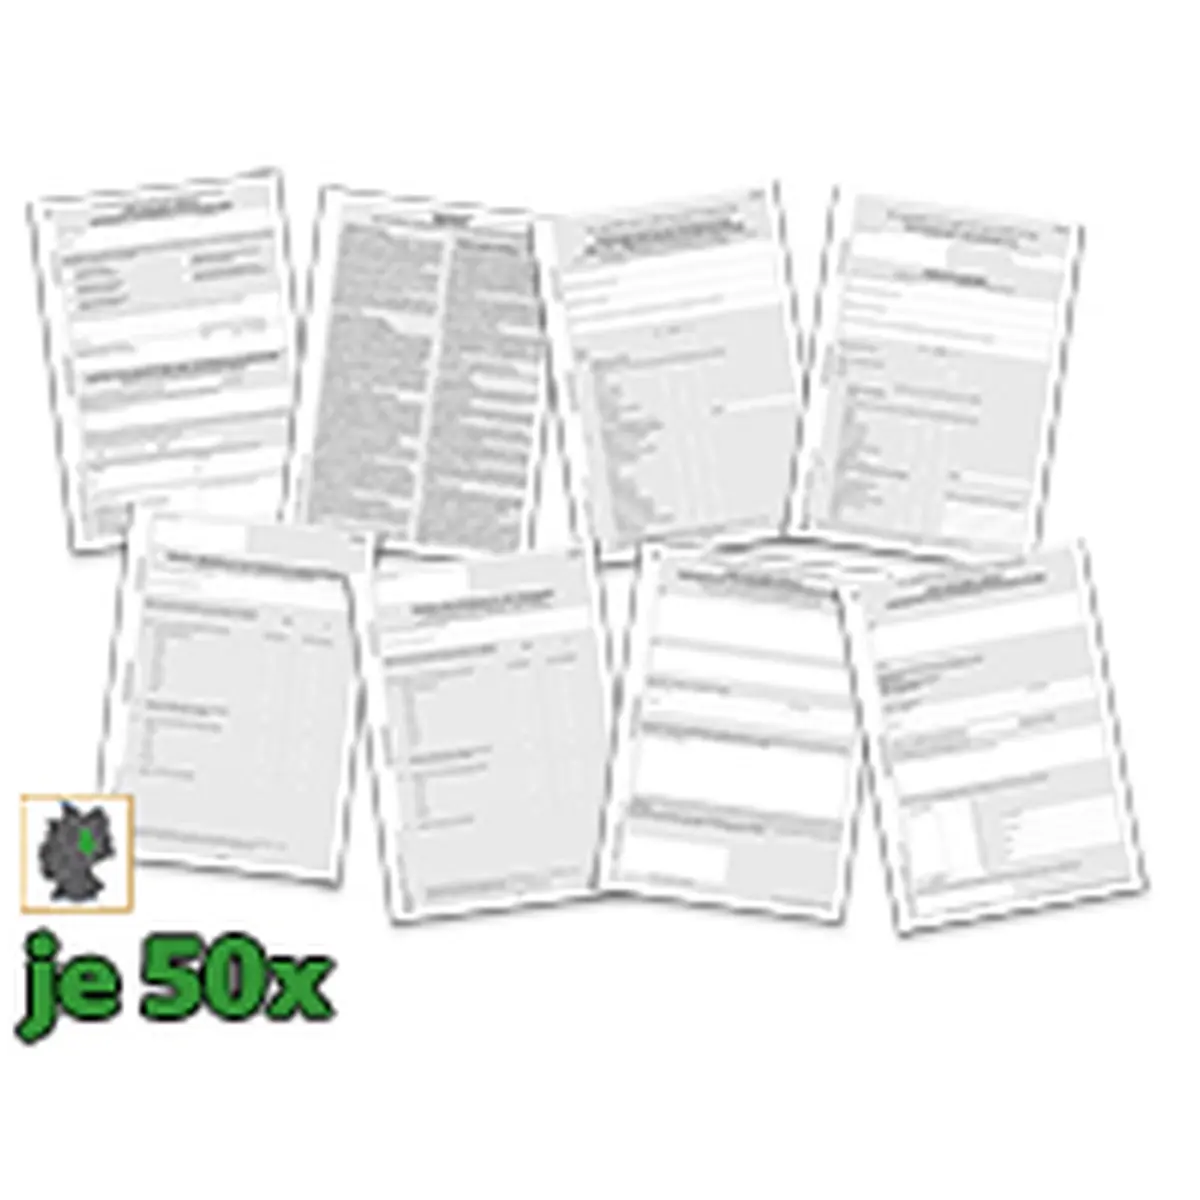 Formulare und Vordrucke Set Erstuntersuchung Ärztlichen Untersuchung nach JArbSchG je 50 Vordrucke, 1 Set für Bürobedarf